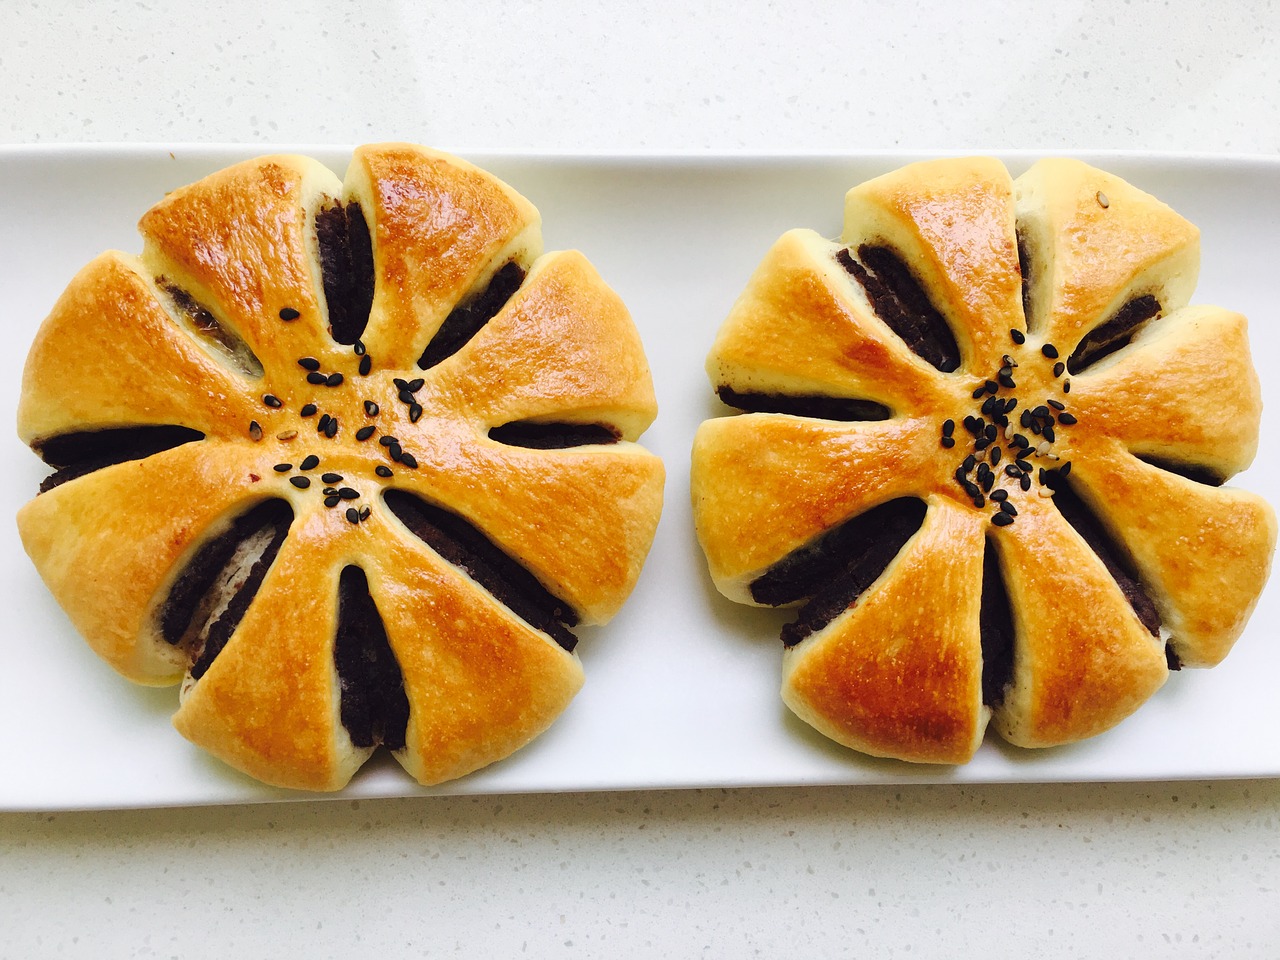 anpan flower-shaped bread bread free photo